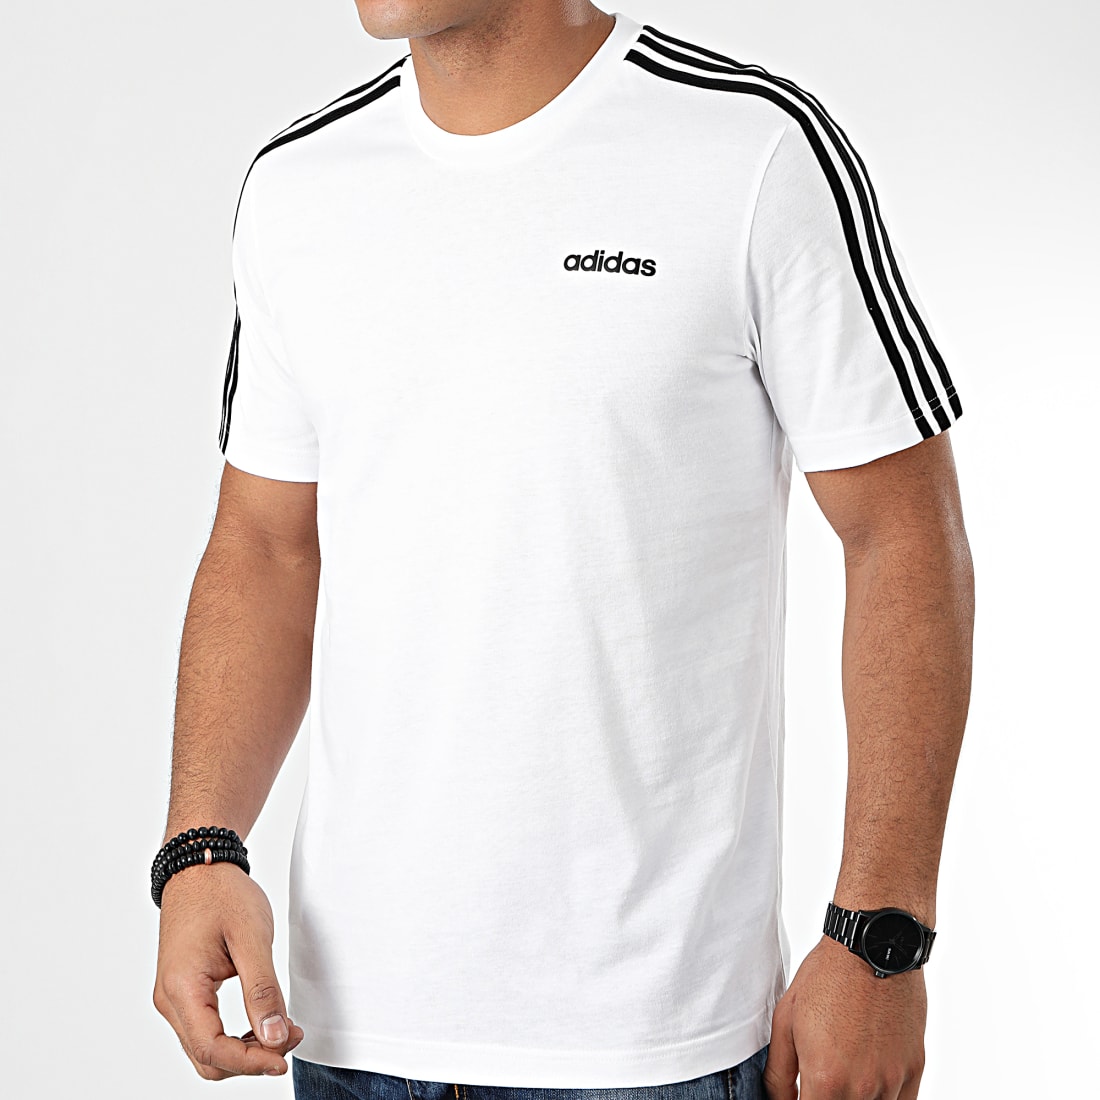 adidas - Tee Shirt Bandes Essential 3 DU0441 Blanc - LaBoutiqueOfficielle.com